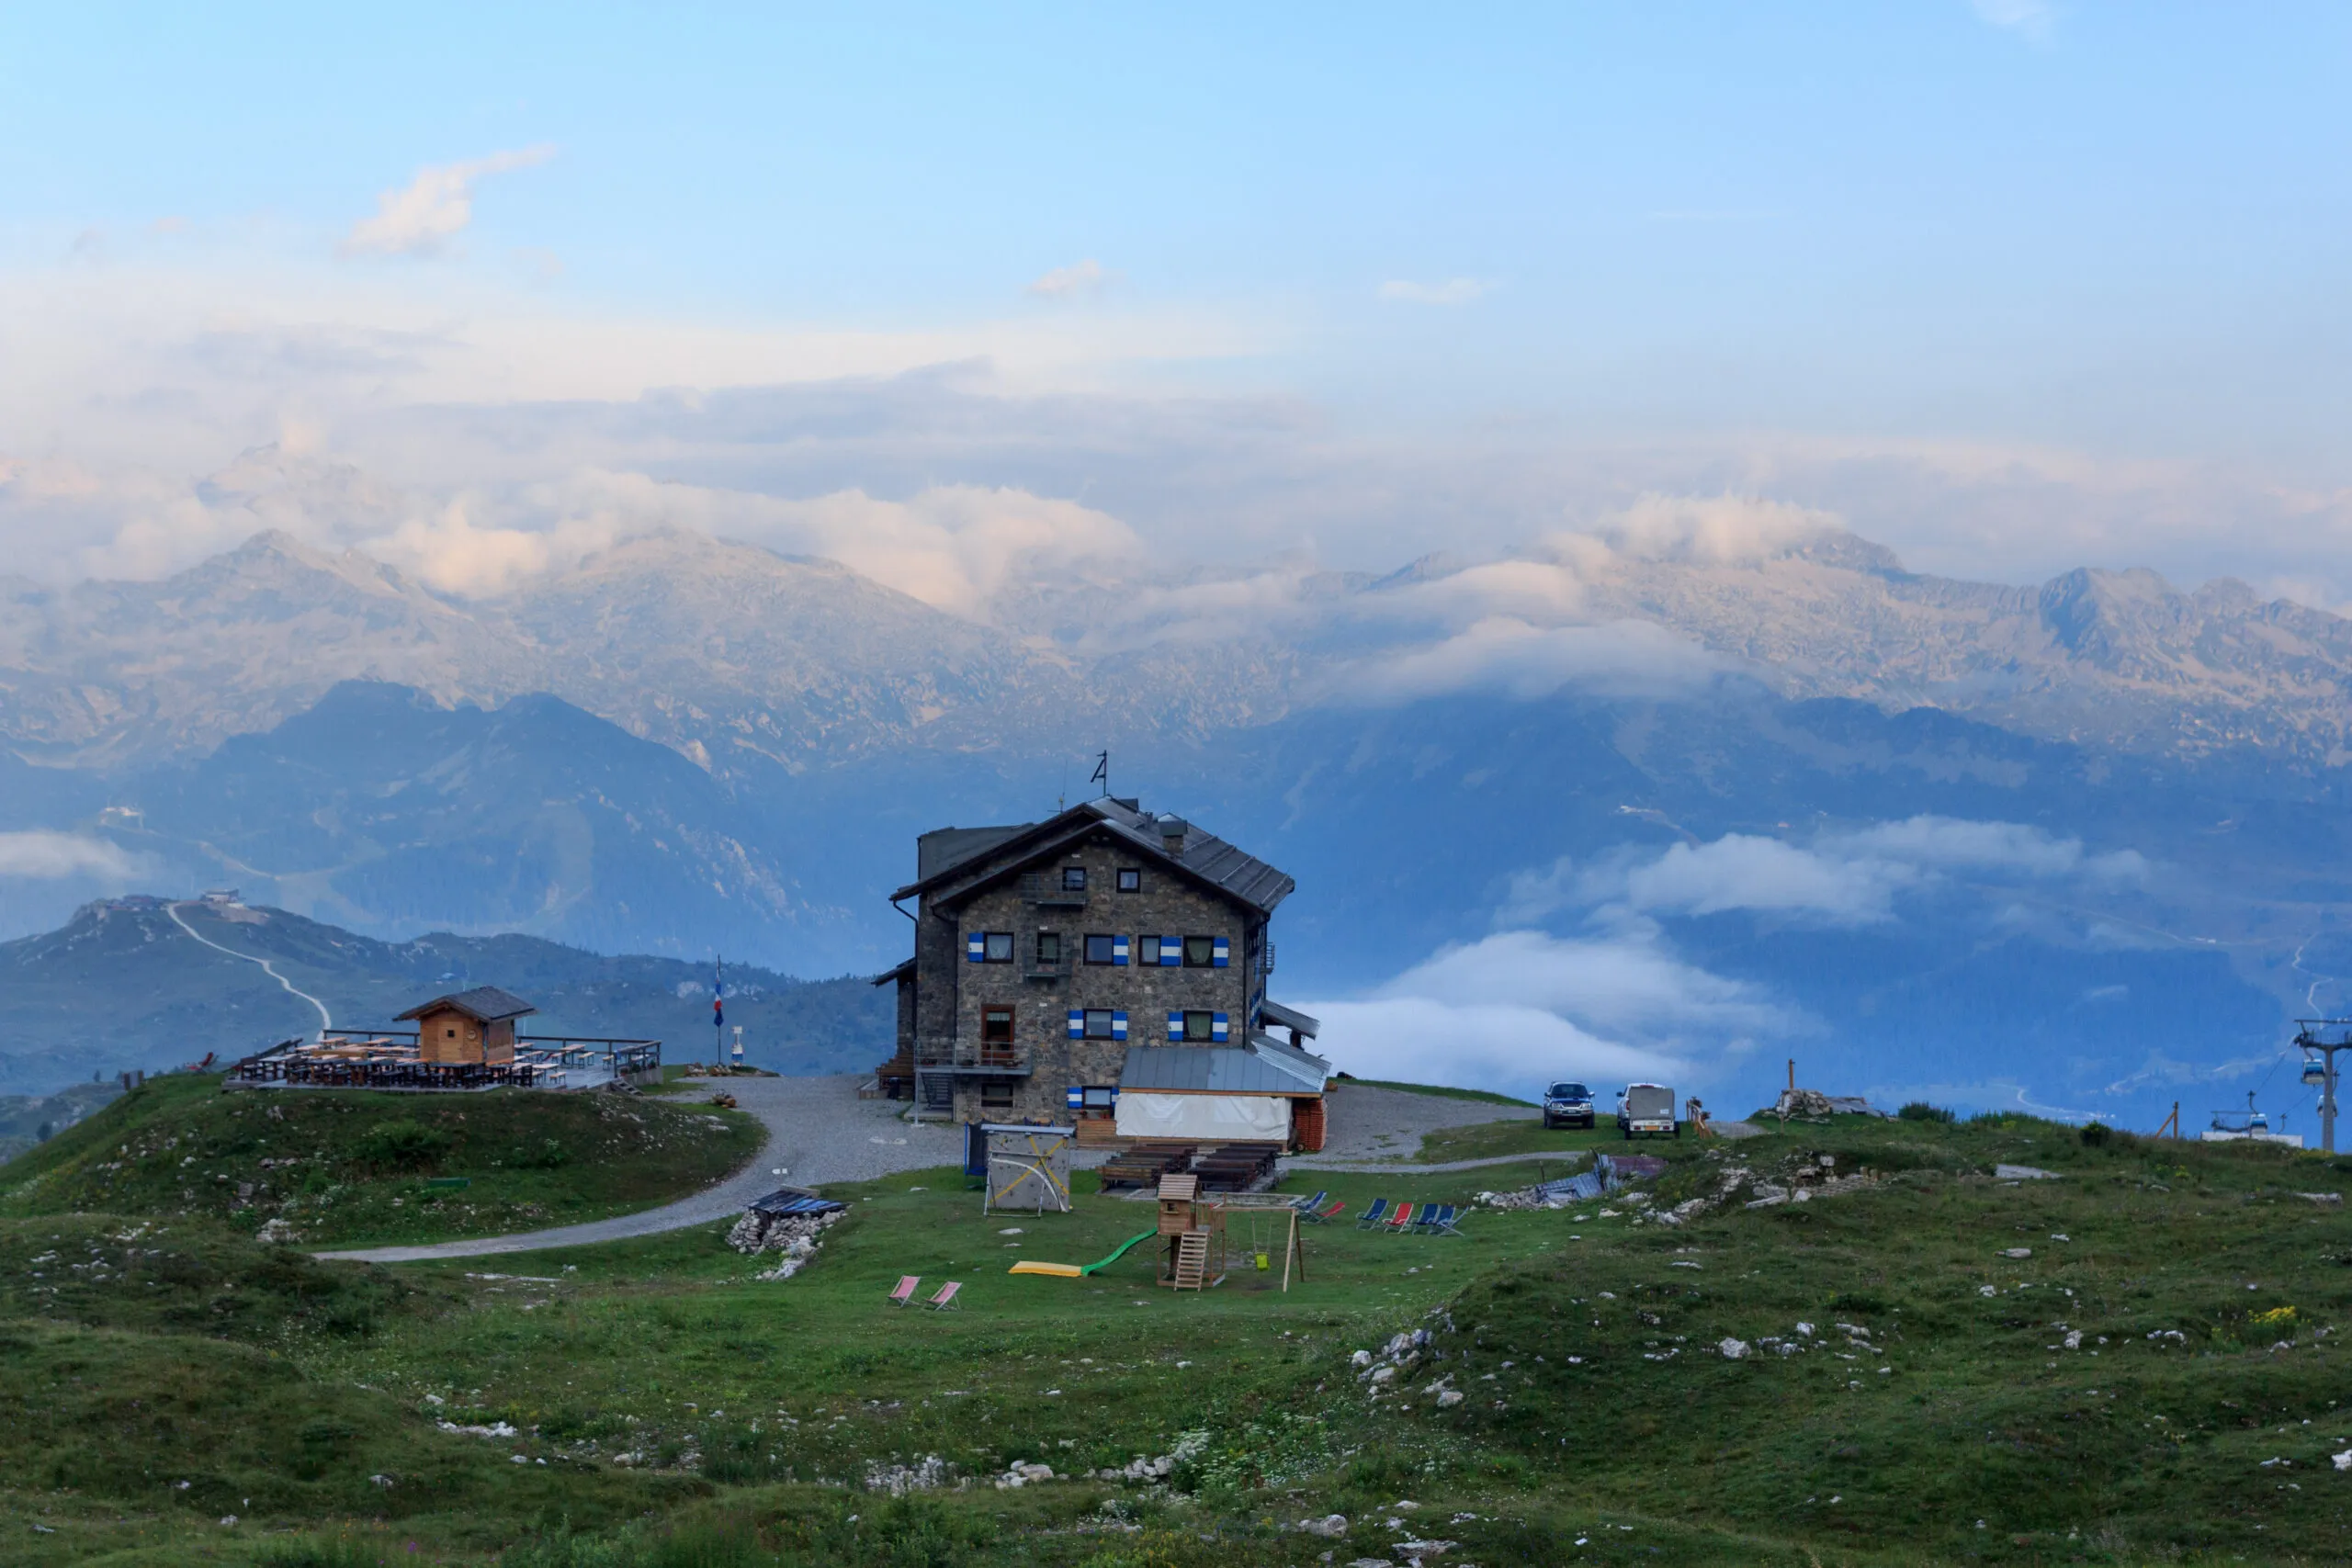 Alpine hut Rifugio Graffer and mountain alps panorama of Adamello-Presanella Alps seen from Brenta Dolomites in Italy